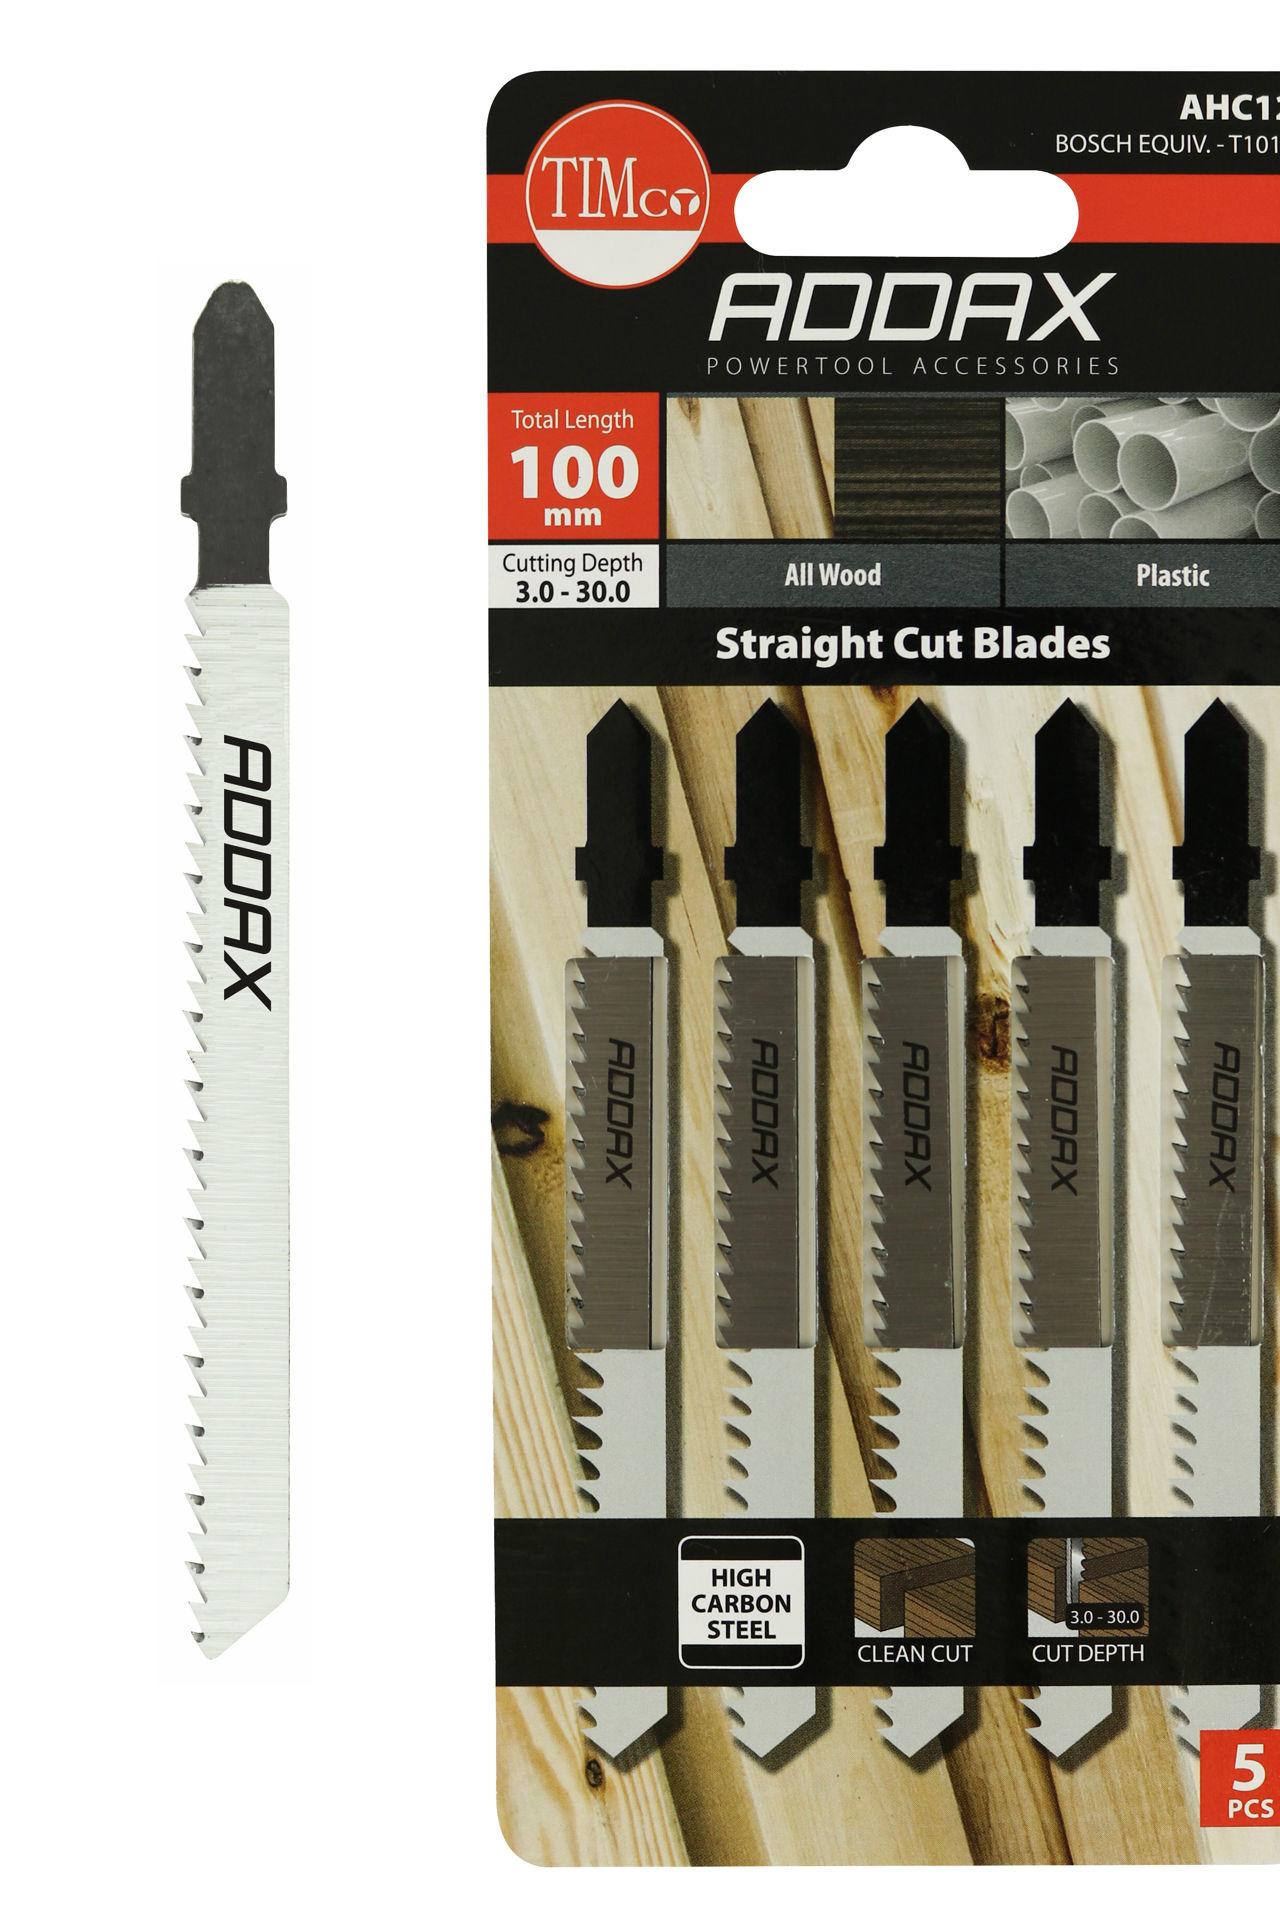 Addax 100mm Jigsaw Blades - Wood and Plastic Cutting - HSS Blades - Straight Cut Blade